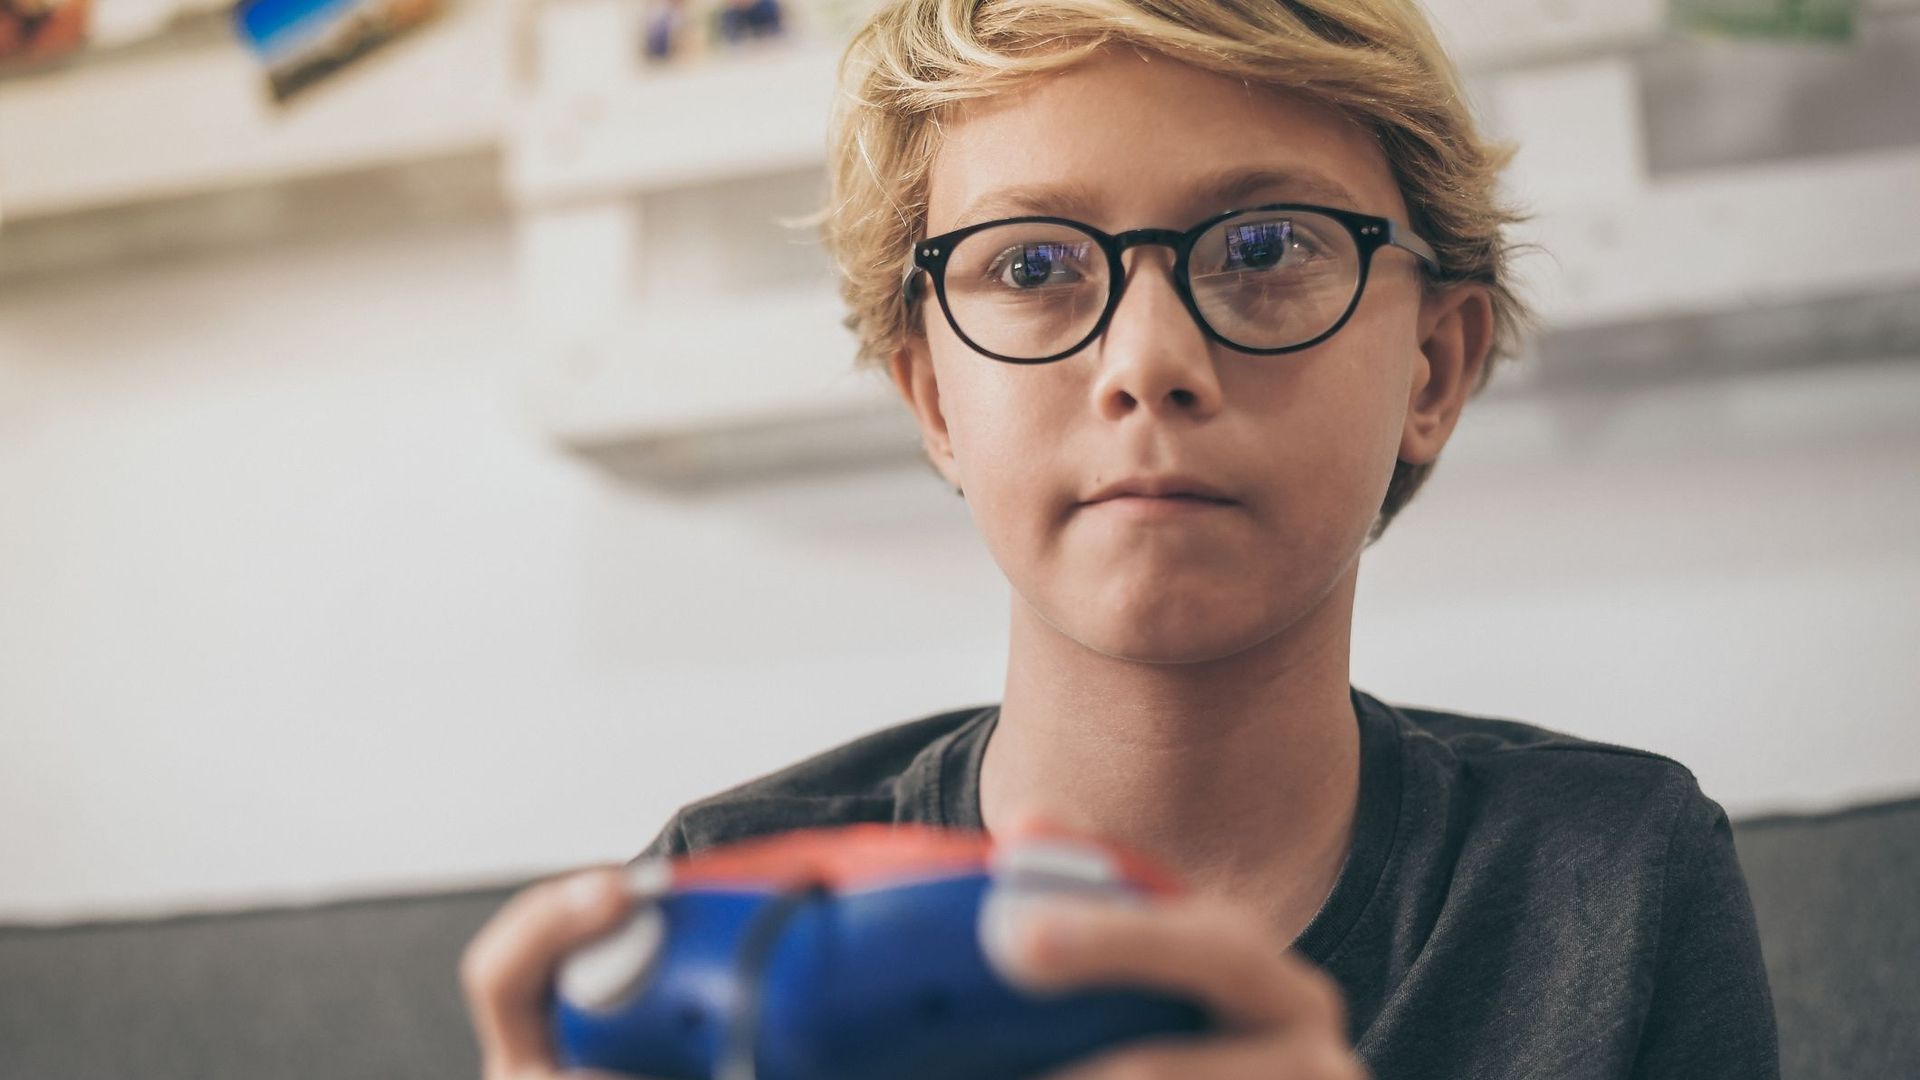 Près de 9 parents sur 10 estiment que leurs adolescents passent trop de temps devant les jeux vidéo.